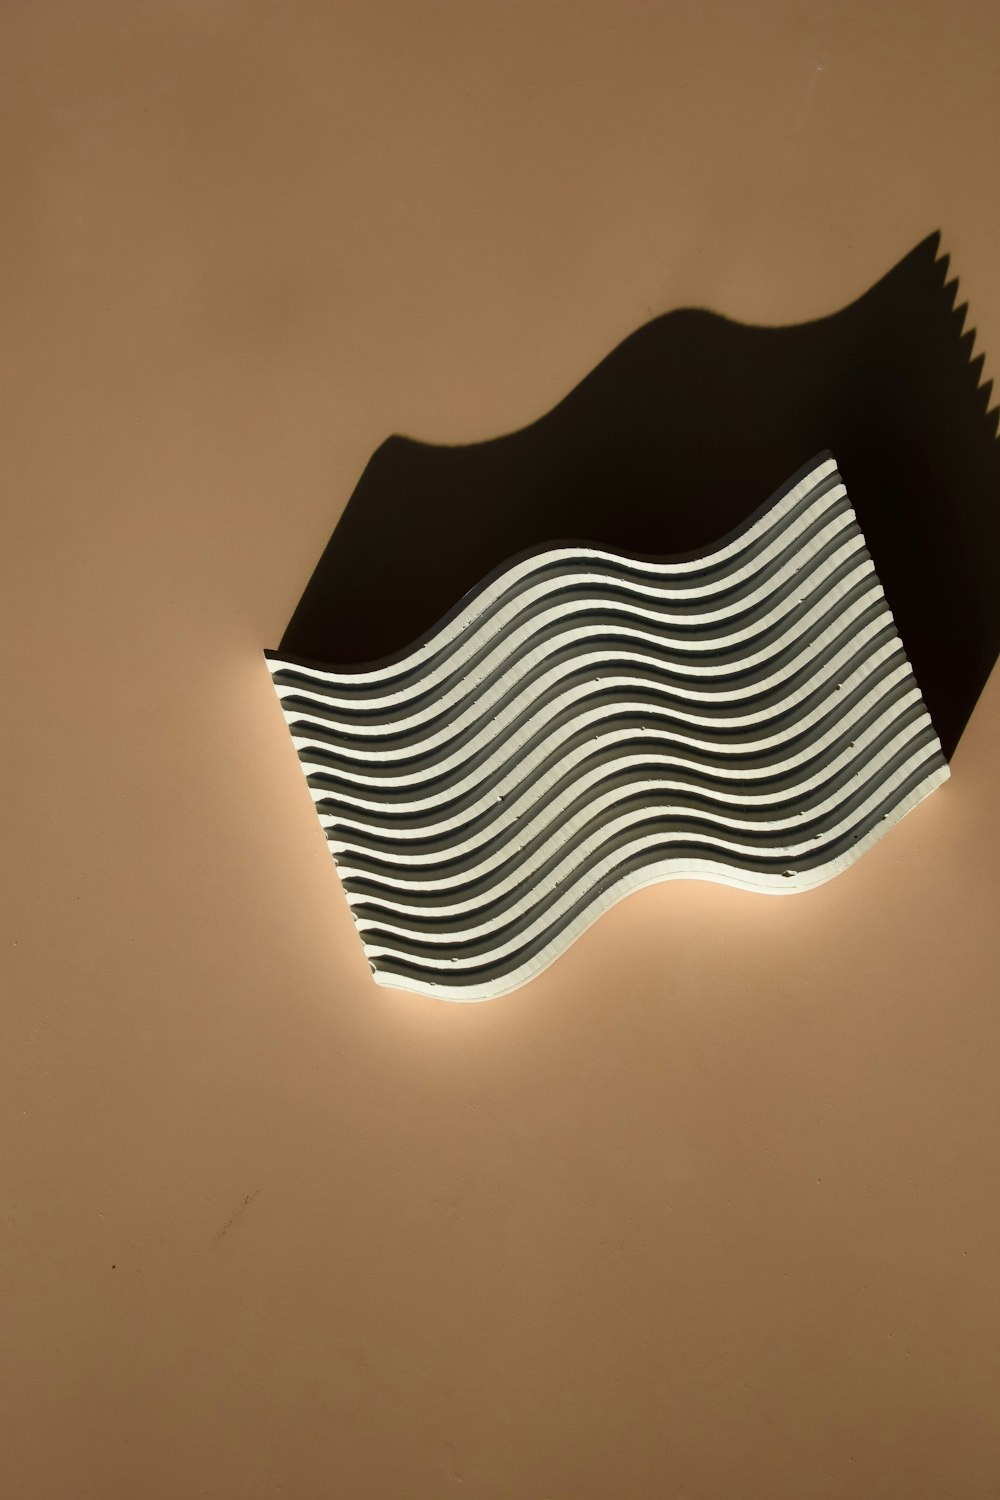 Un pezzo di carta a forma di onda in bianco e nero